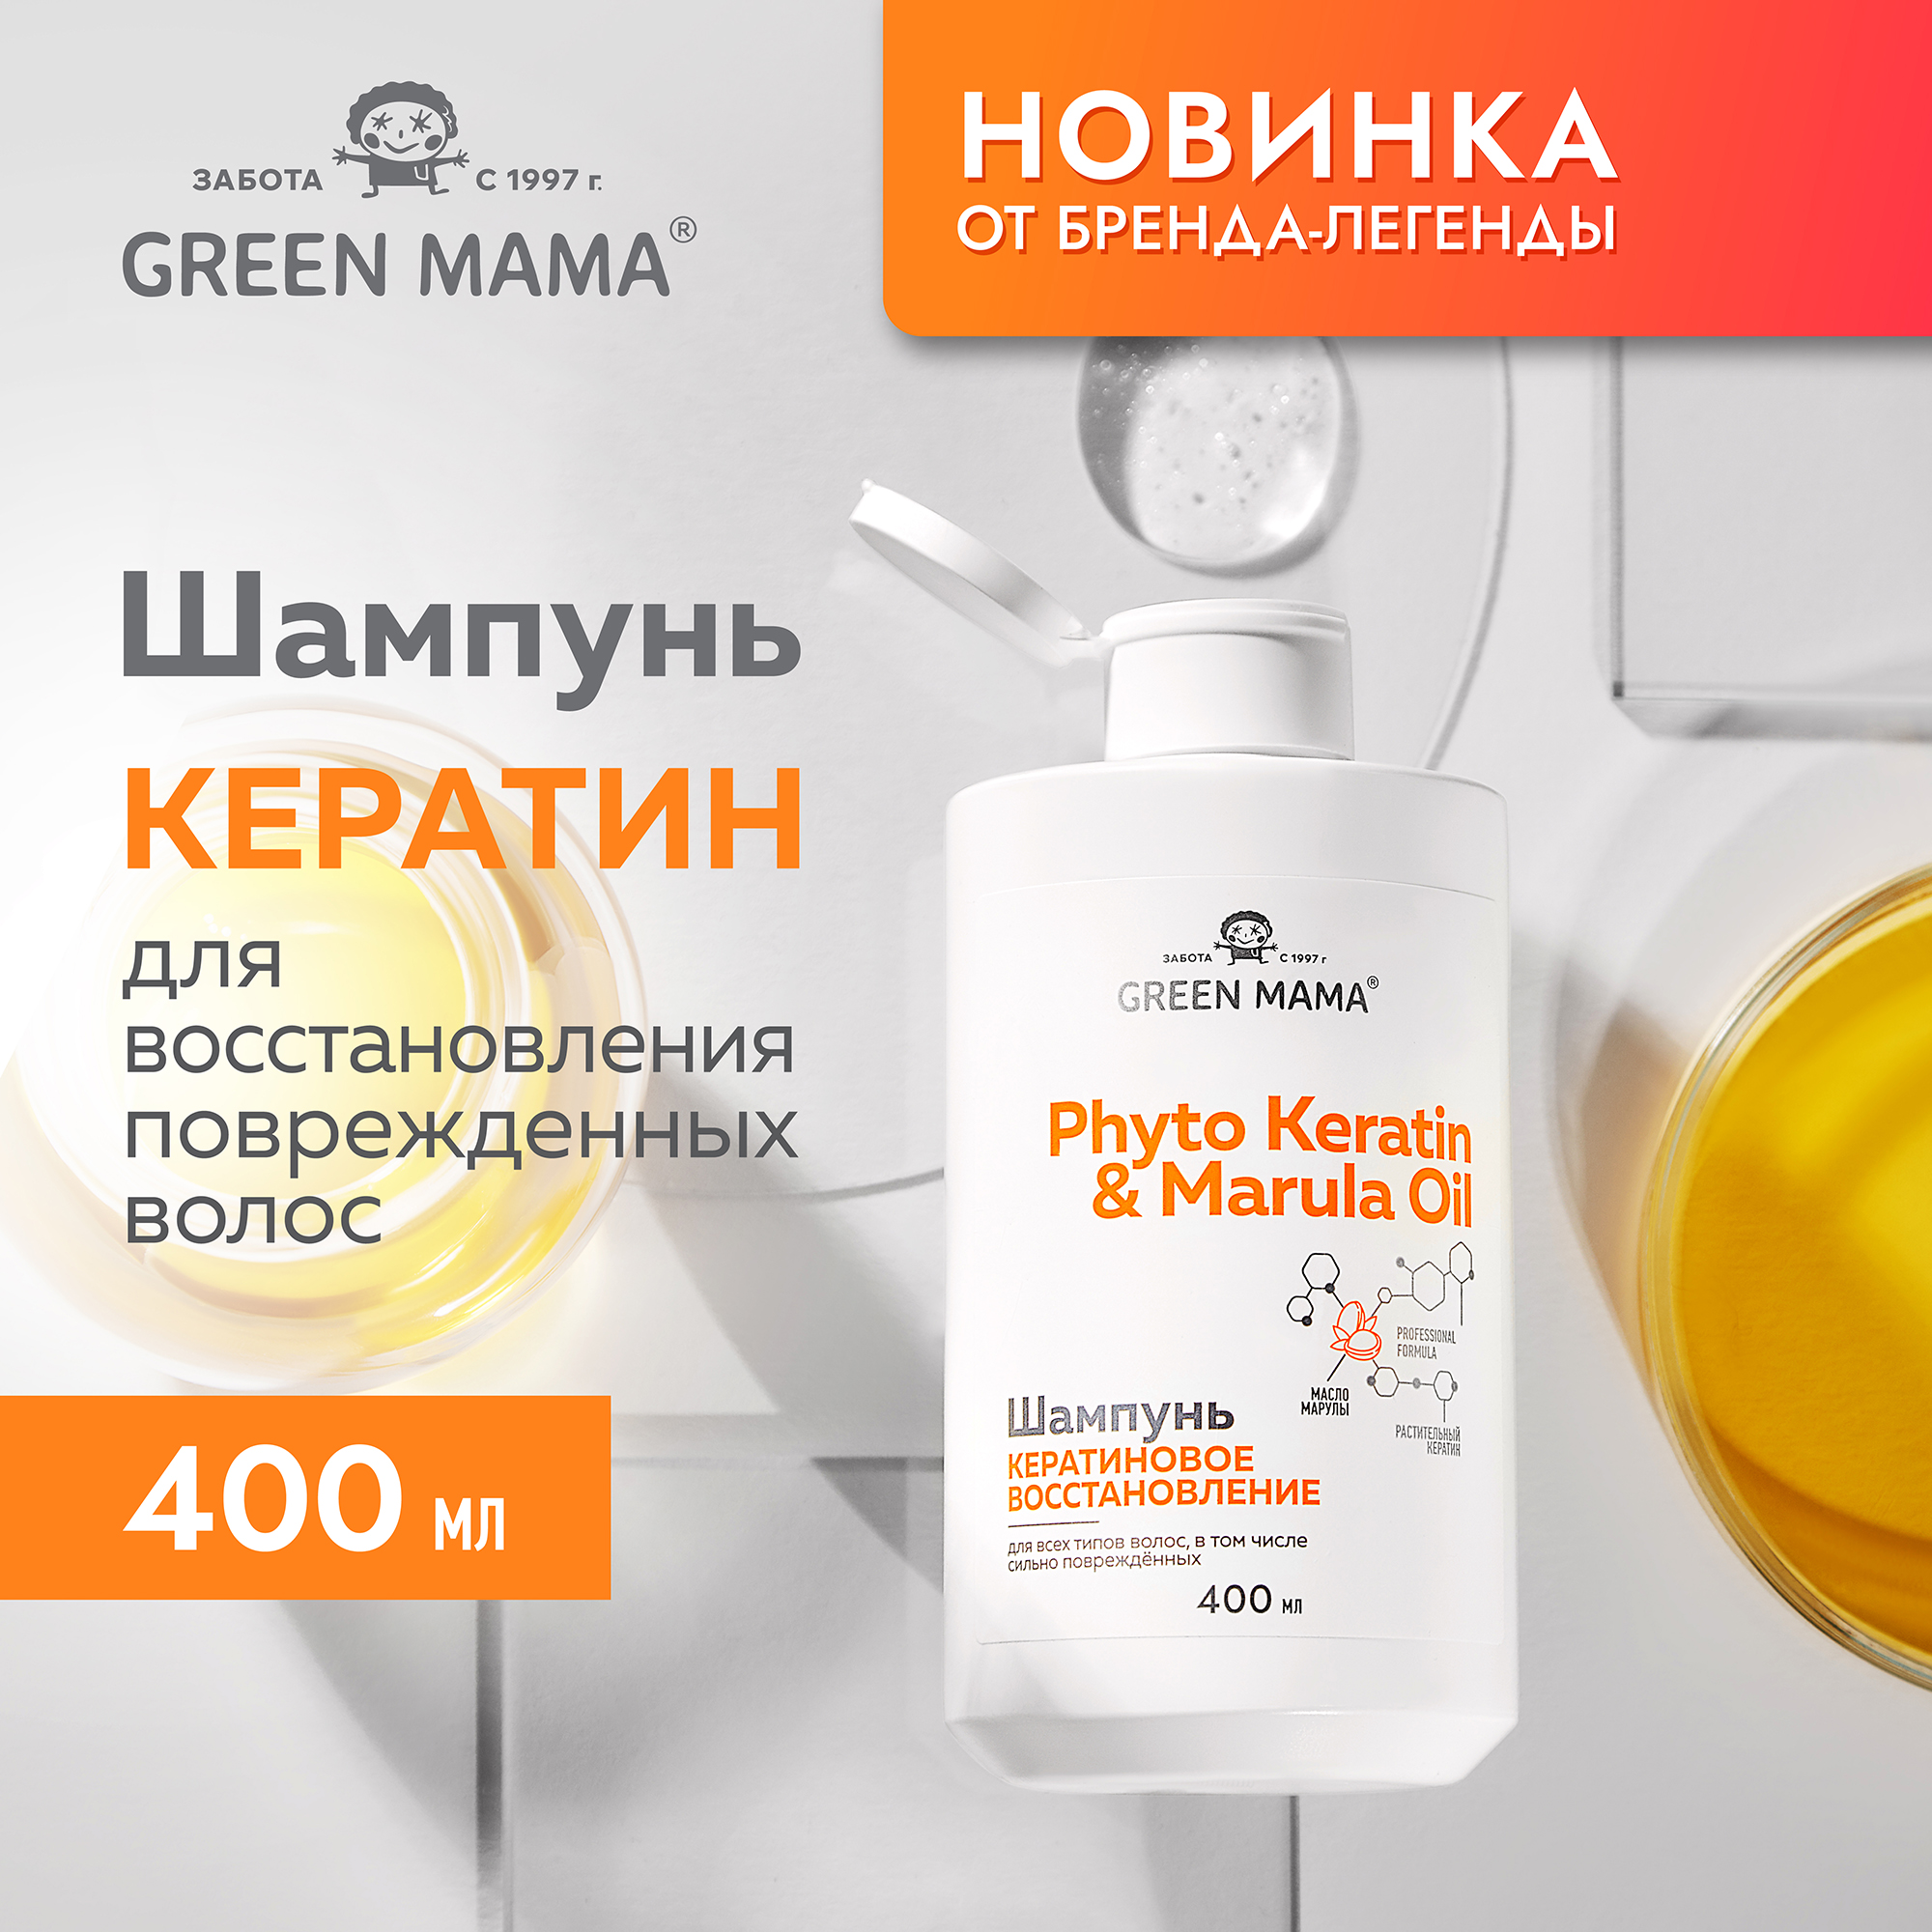 Шампунь Green Mama PHYTO KERATIN MARULA OIL для восстановления волос с маслом марулы 400 мл - фото 2